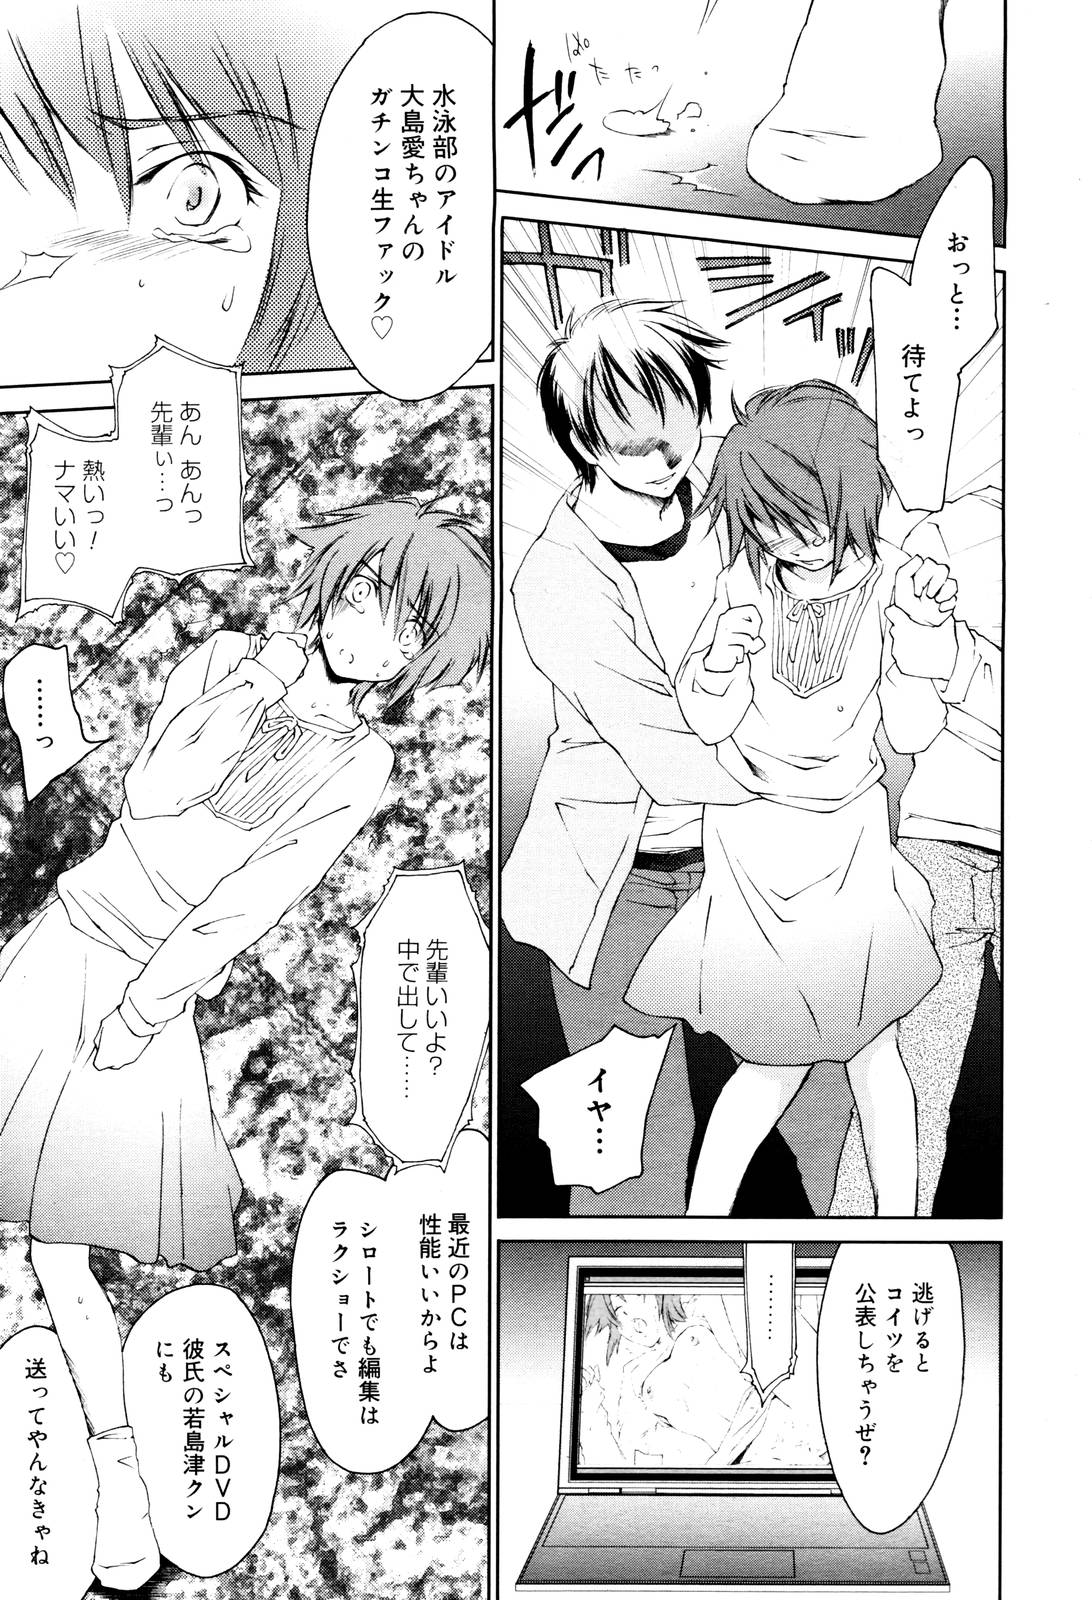 Manga Bangaichi 2006-01 page 49 full